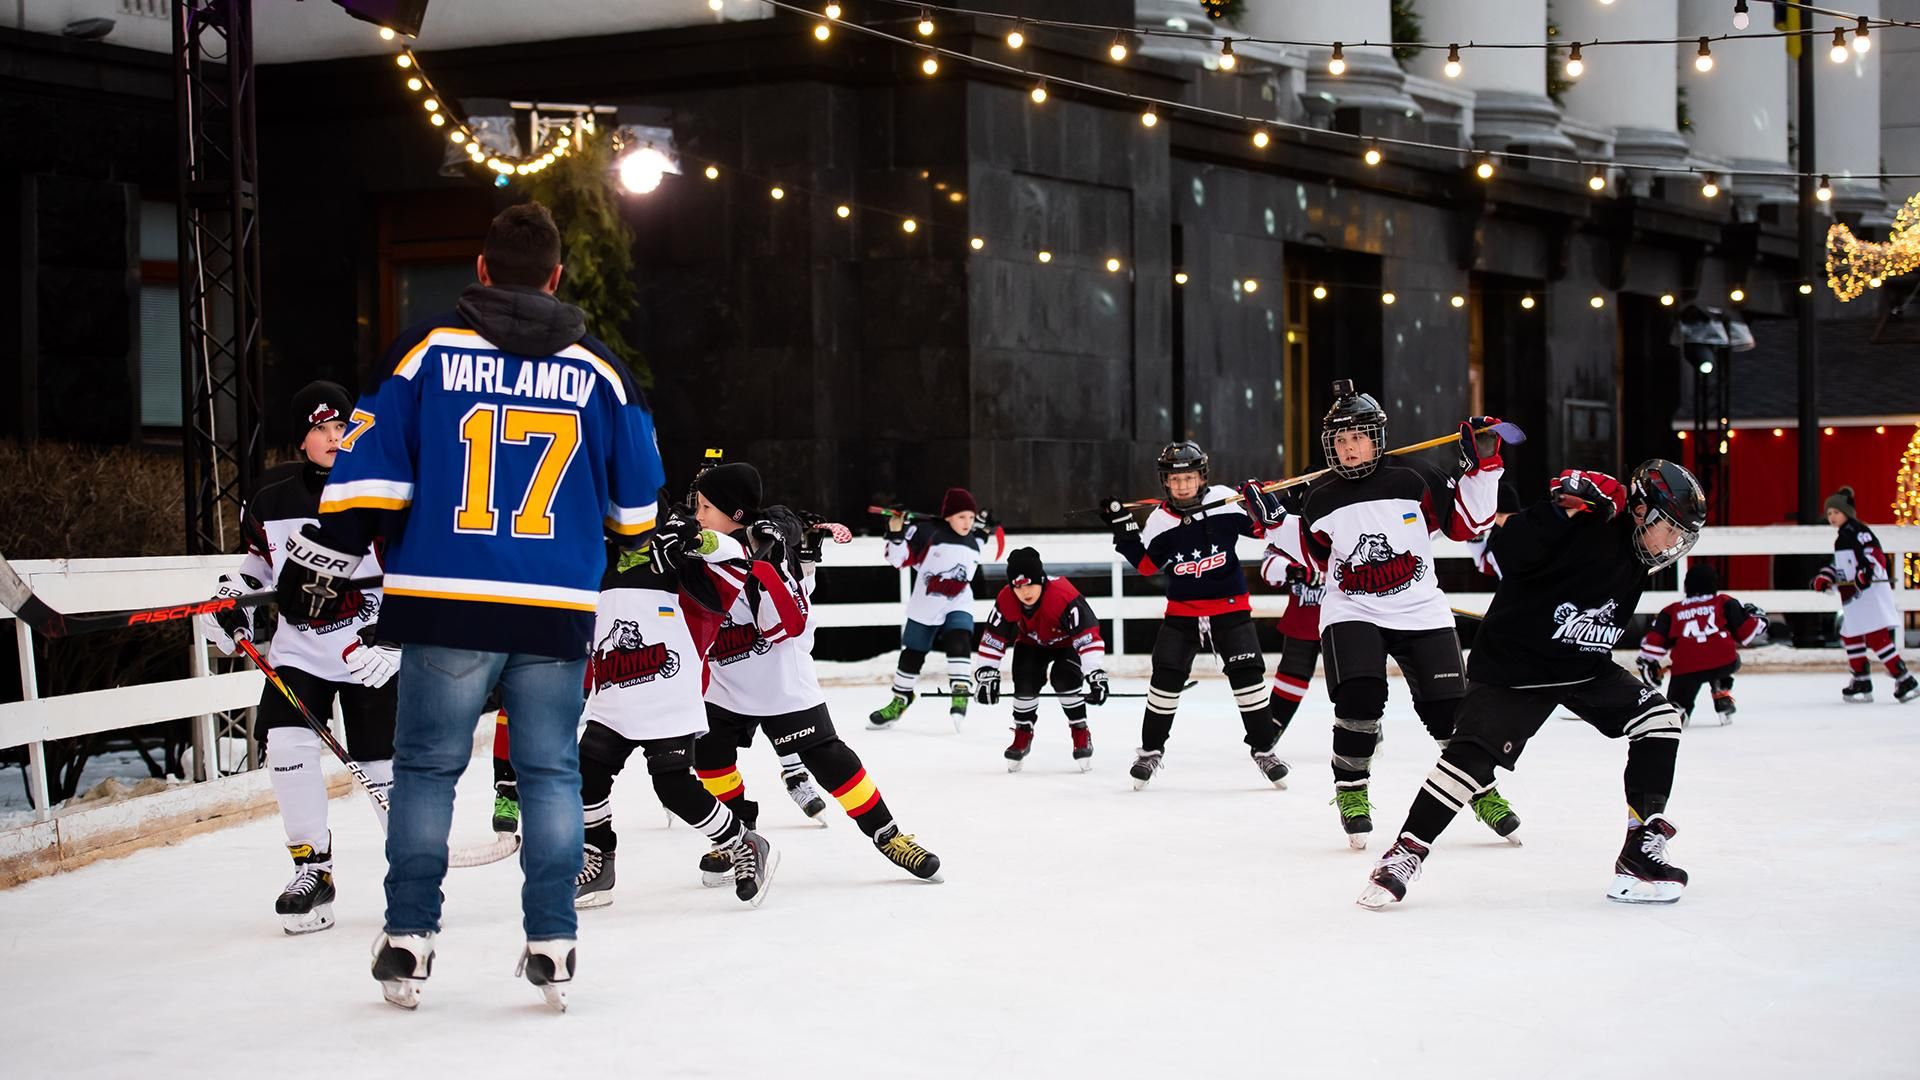 Зірка НХЛ провів тренування з юними хокеїстами на ковзанці просто неба в Києві: фото та відео